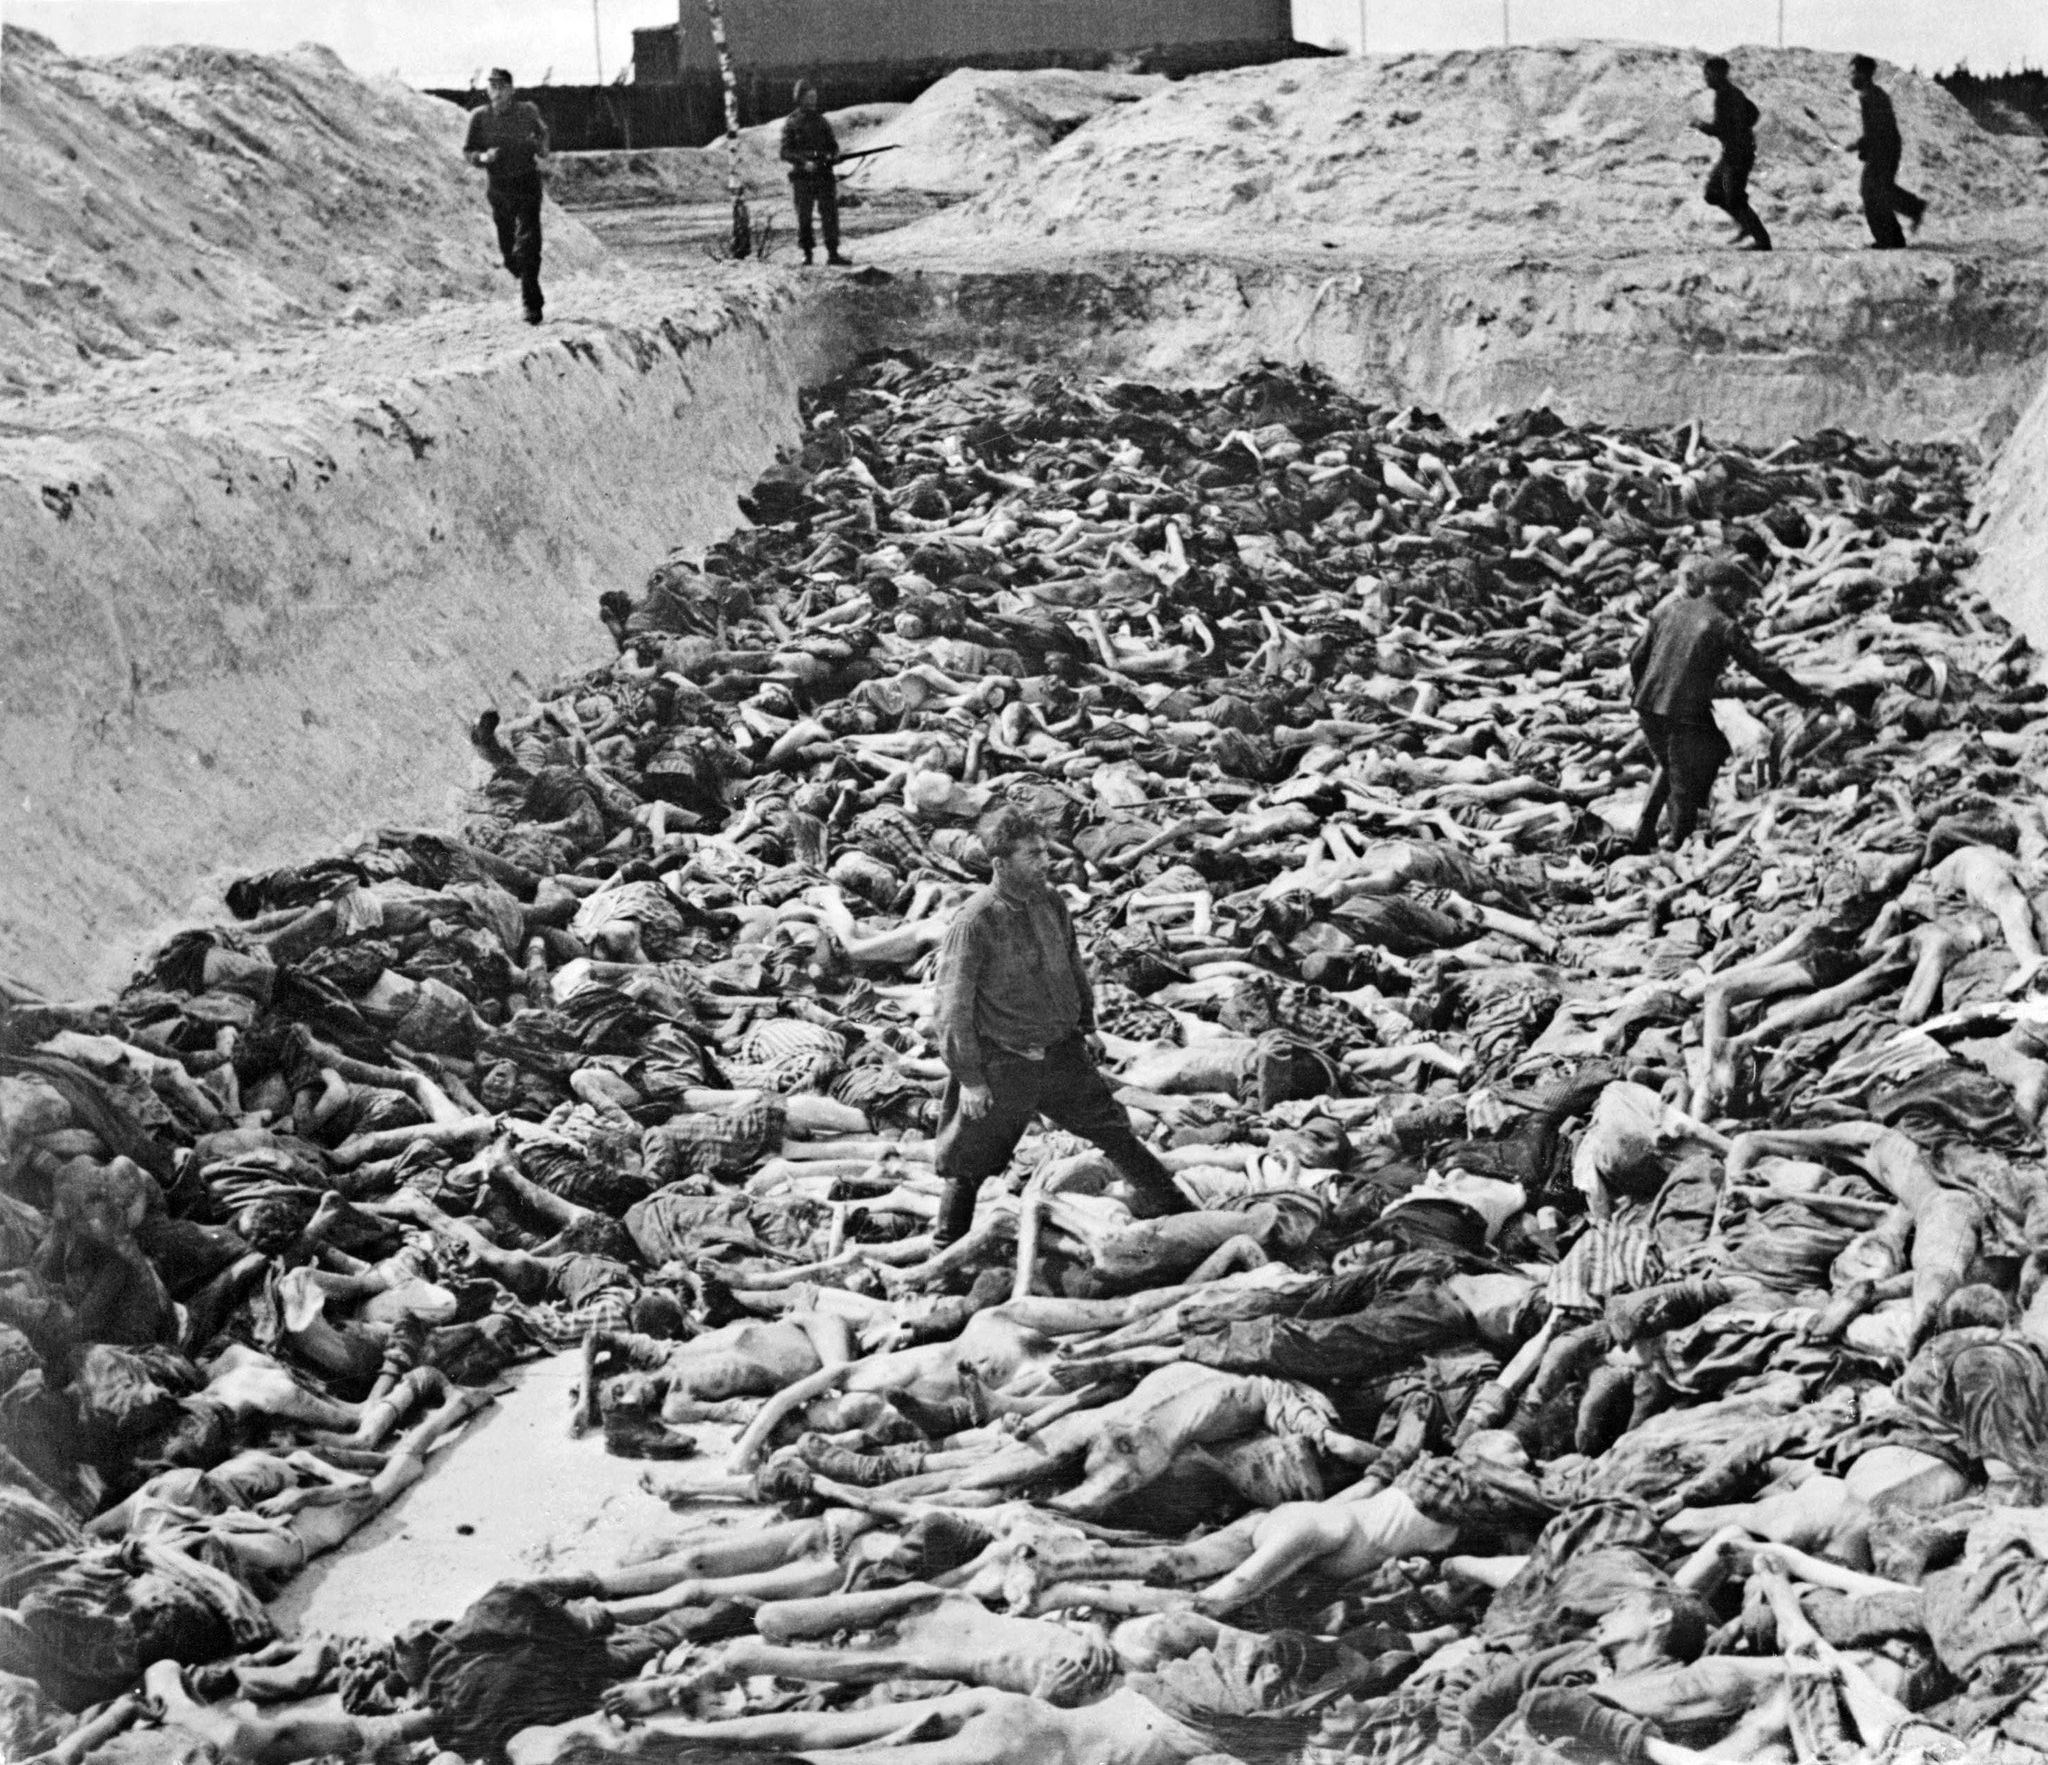 Negacionismo histórico. Há grupos que acreditam no Holocausto, o assassinato em massa de milhões de judeus pelo regime nazista durante a Segunda Guerra Mundial, ignorando diversas evidências, documentos e testemunhos.